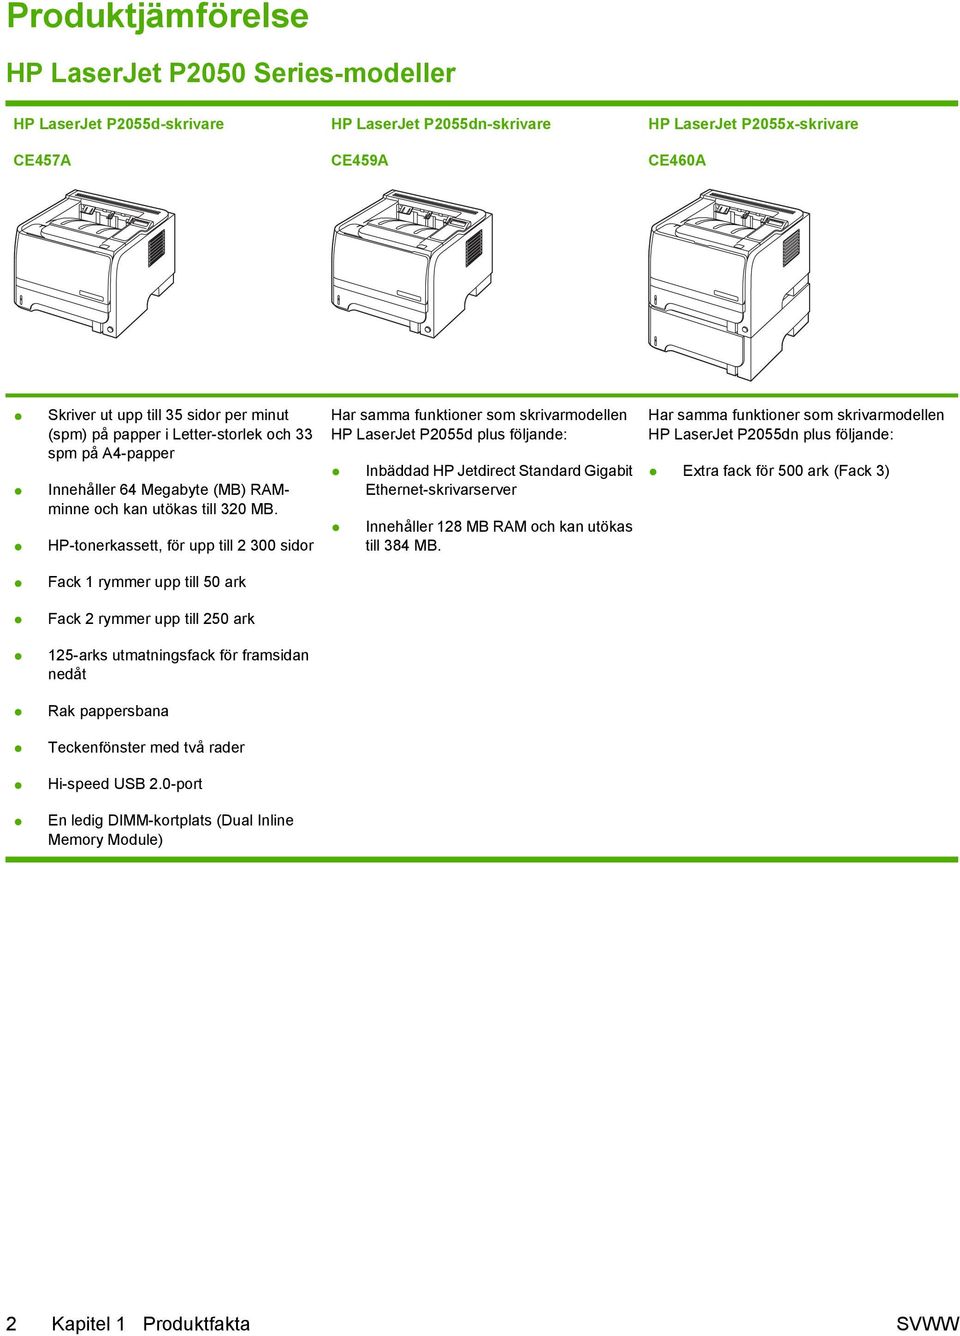 HP-tonerkassett, för upp till 2 300 sidor Har samma funktioner som skrivarmodellen HP LaserJet P2055d plus följande: Inbäddad HP Jetdirect Standard Gigabit Ethernet-skrivarserver Innehåller 128 MB